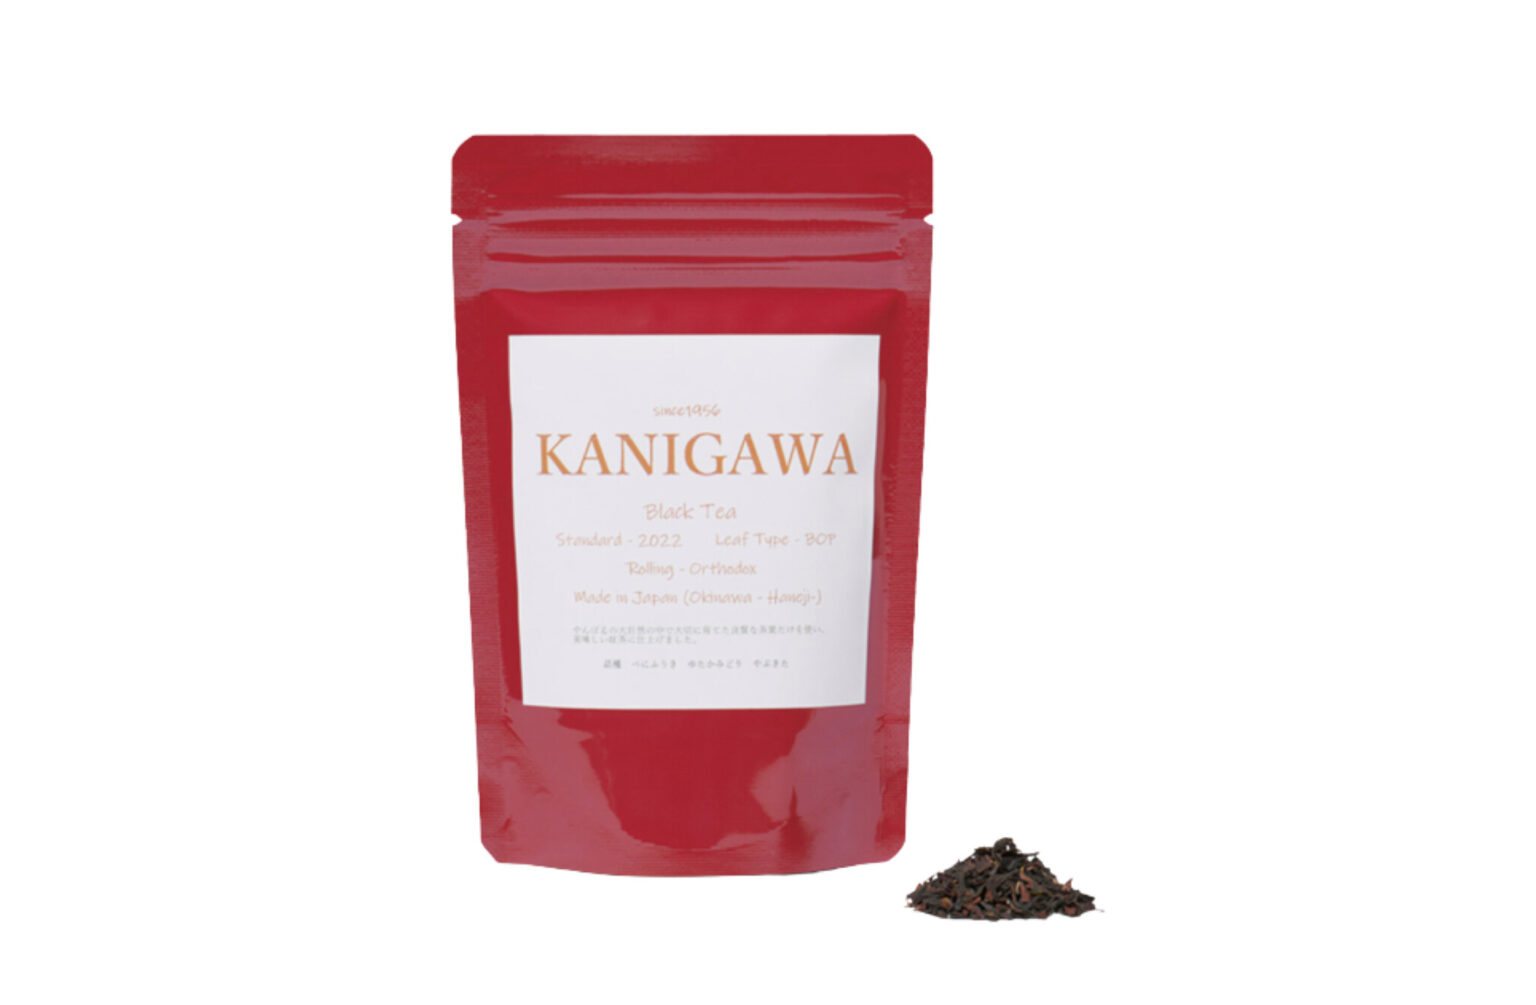 〈金川製茶〉のKANIGAWA Black Tea。やんばるで、自家配合の肥料を中心に使って栽培される、沖縄産茶葉「べにふうき」などをブレンドしている。国産紅茶グランプリで3年連続で賞を獲得。40g 1,080円。〈LIQUID THE STORE〉などで販売。